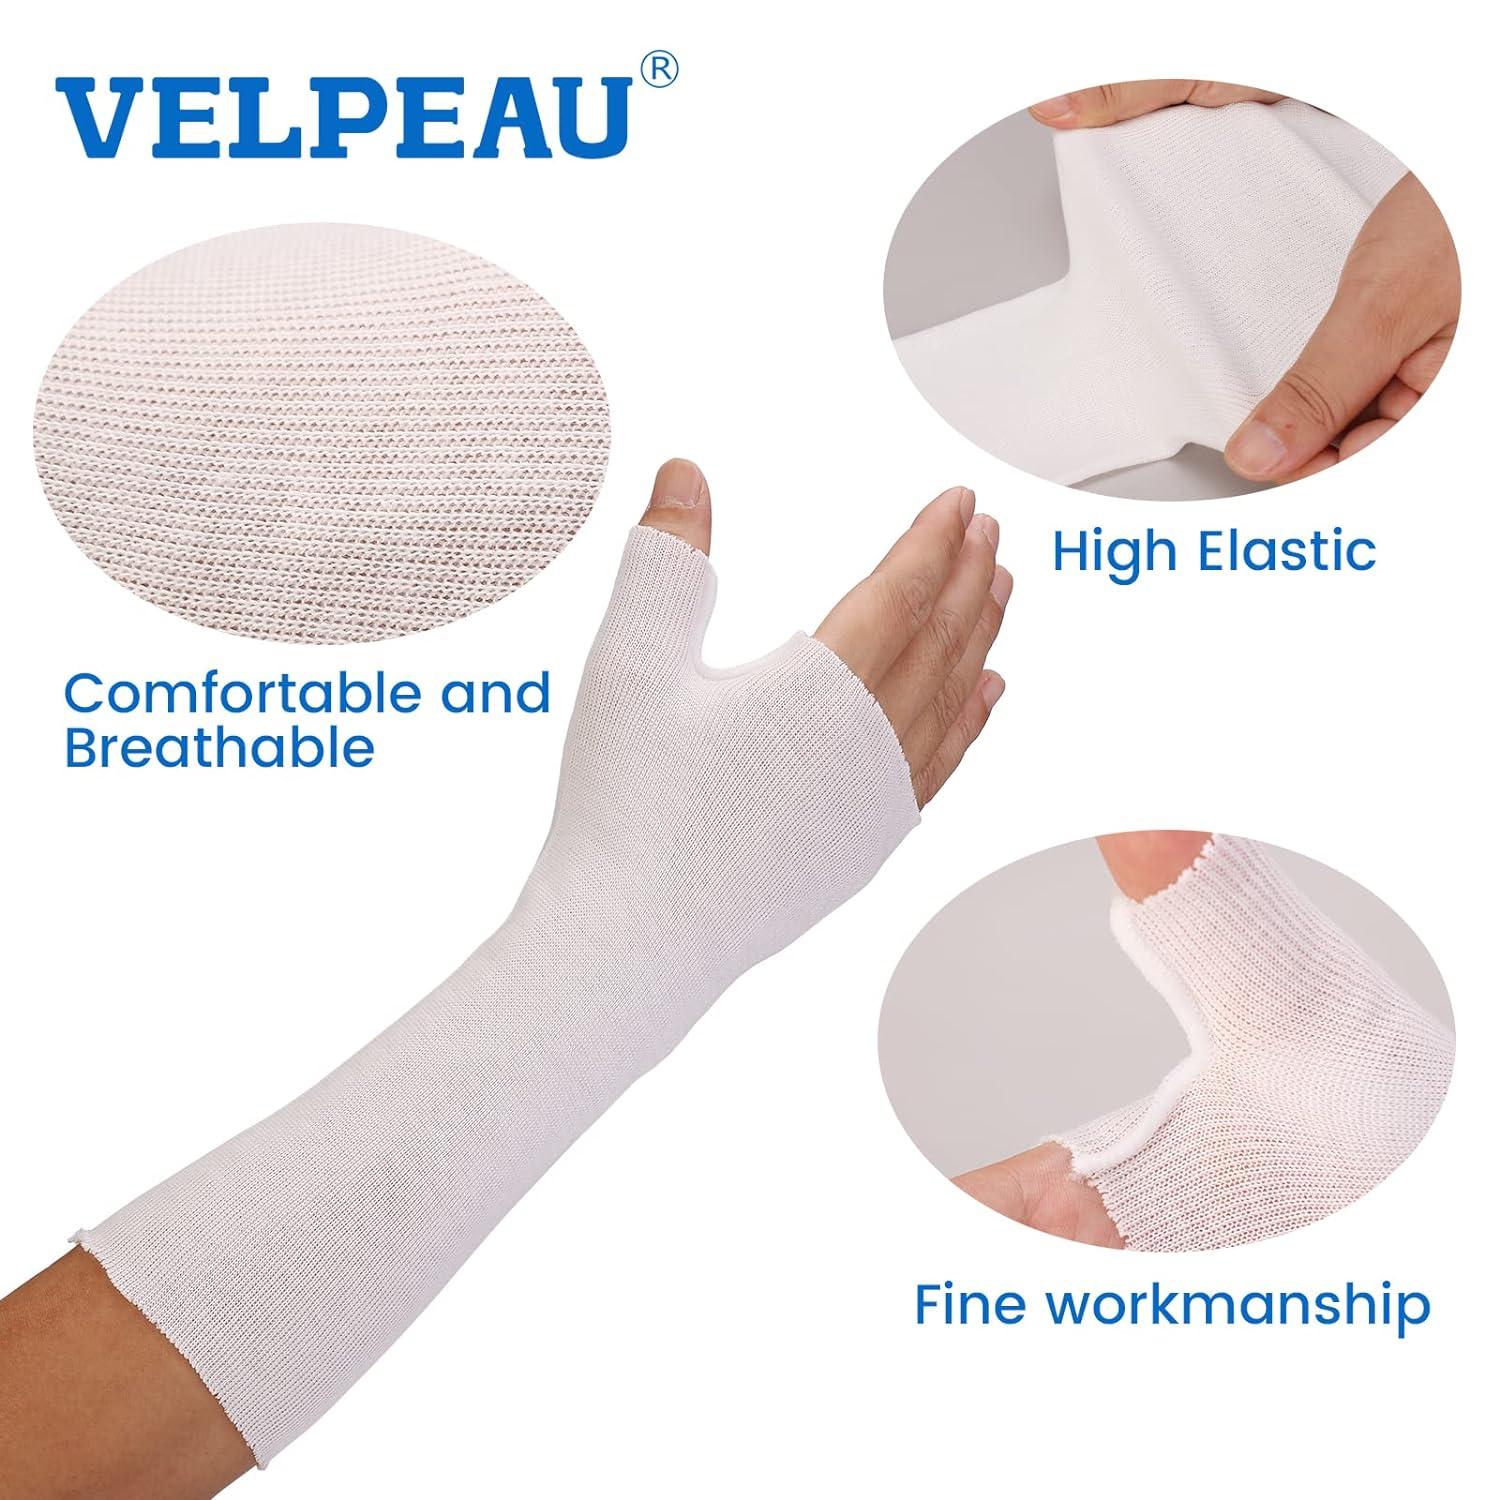 Velpeau Wrist Brace with Thumb Spica Splint for De Quervain's